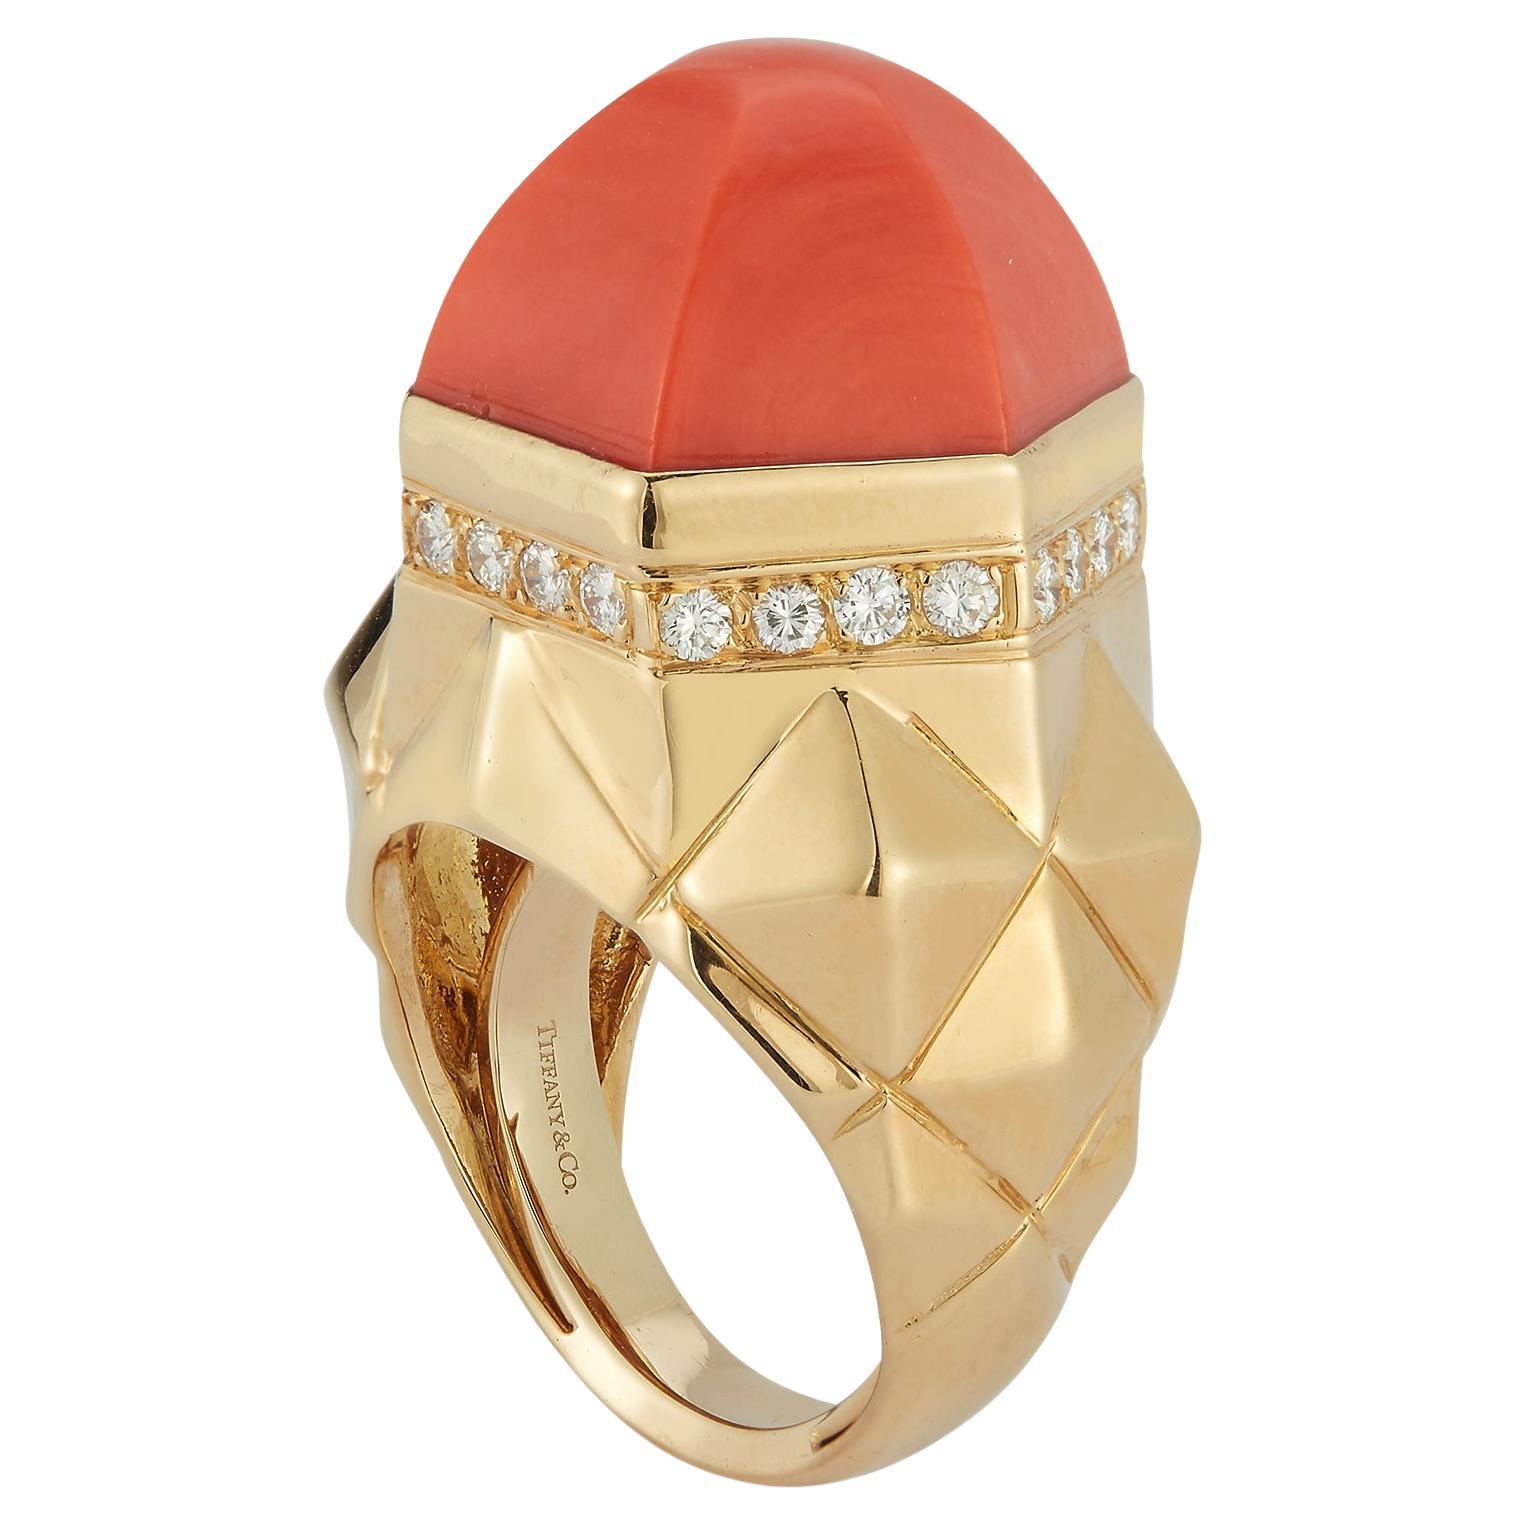 Co. von Tiffany und Co. Kuppel-Ring mit Koralle und Diamant